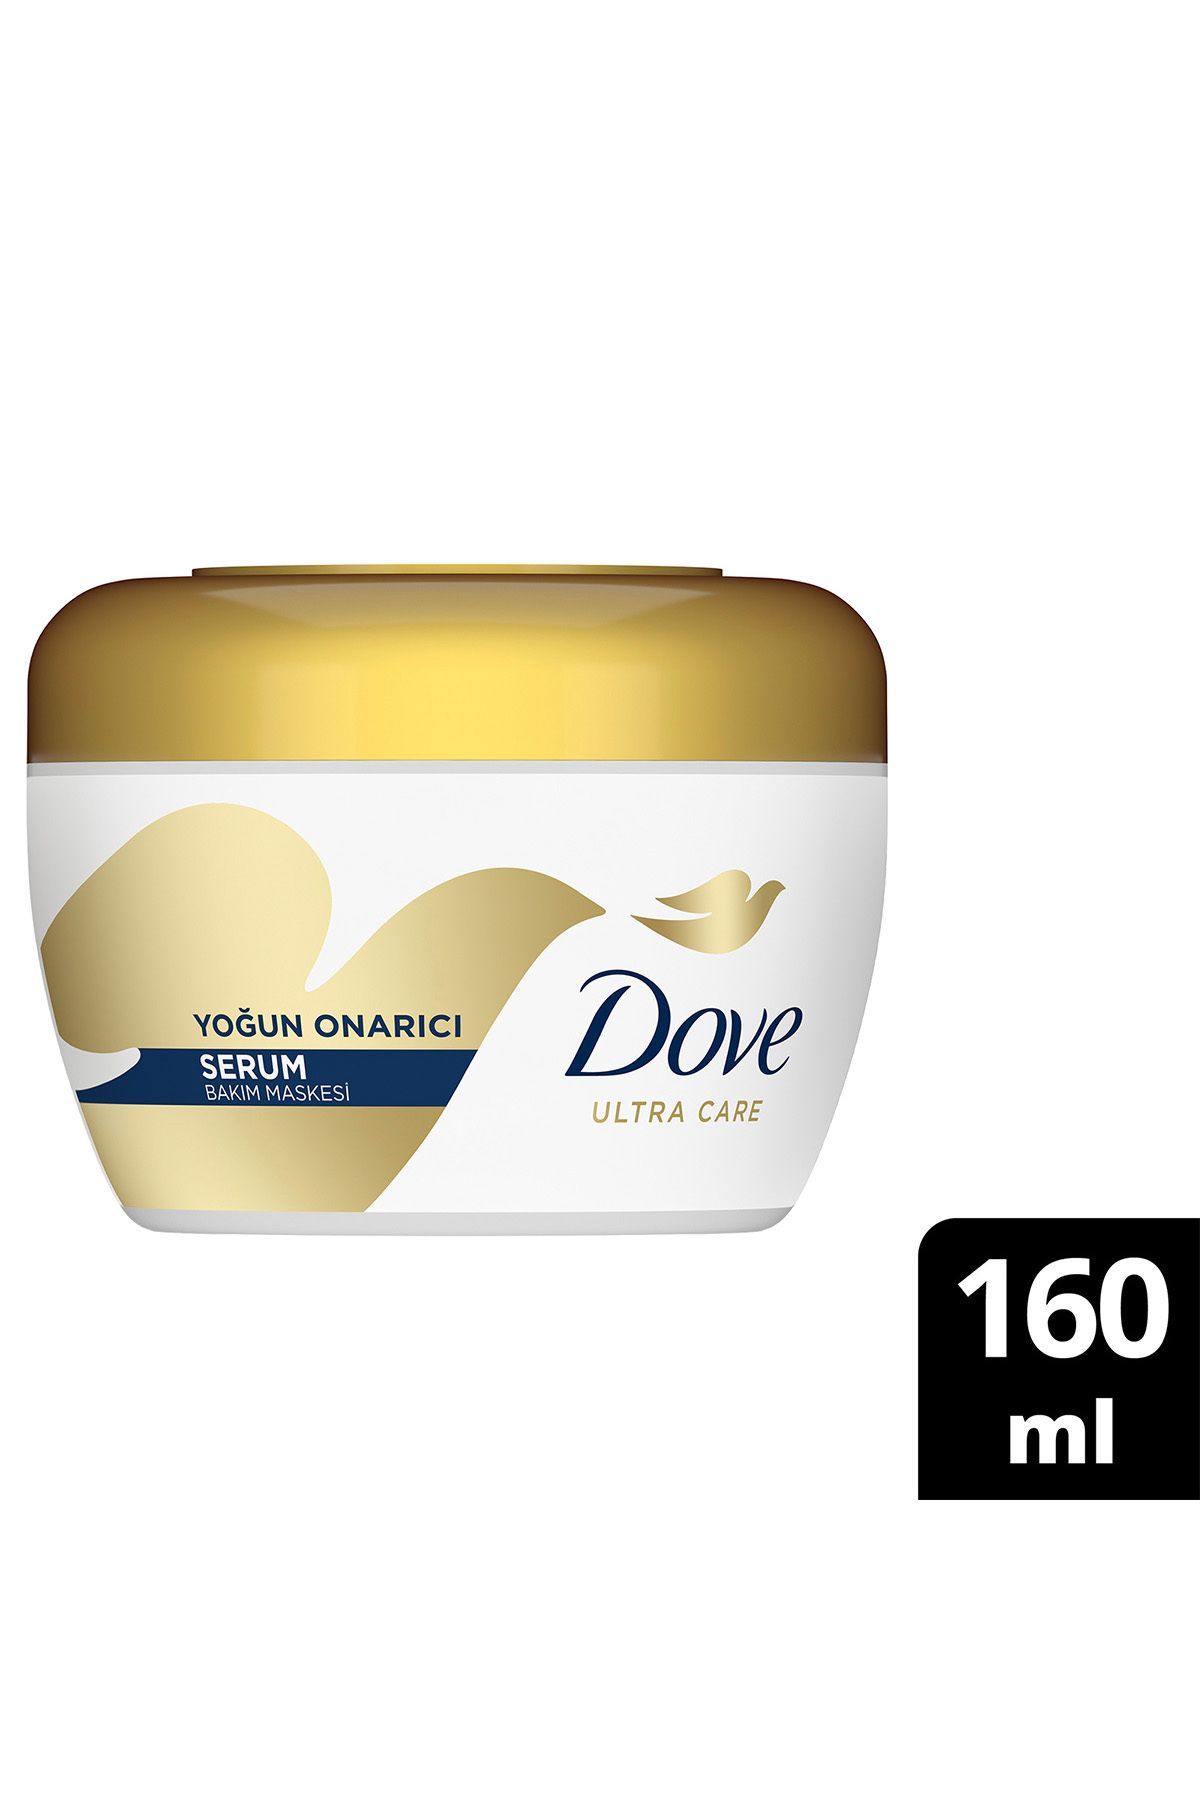 Dove 1 Minute Serum Yoğun Onarıcı Saç Bakım Maskes 160 Ml